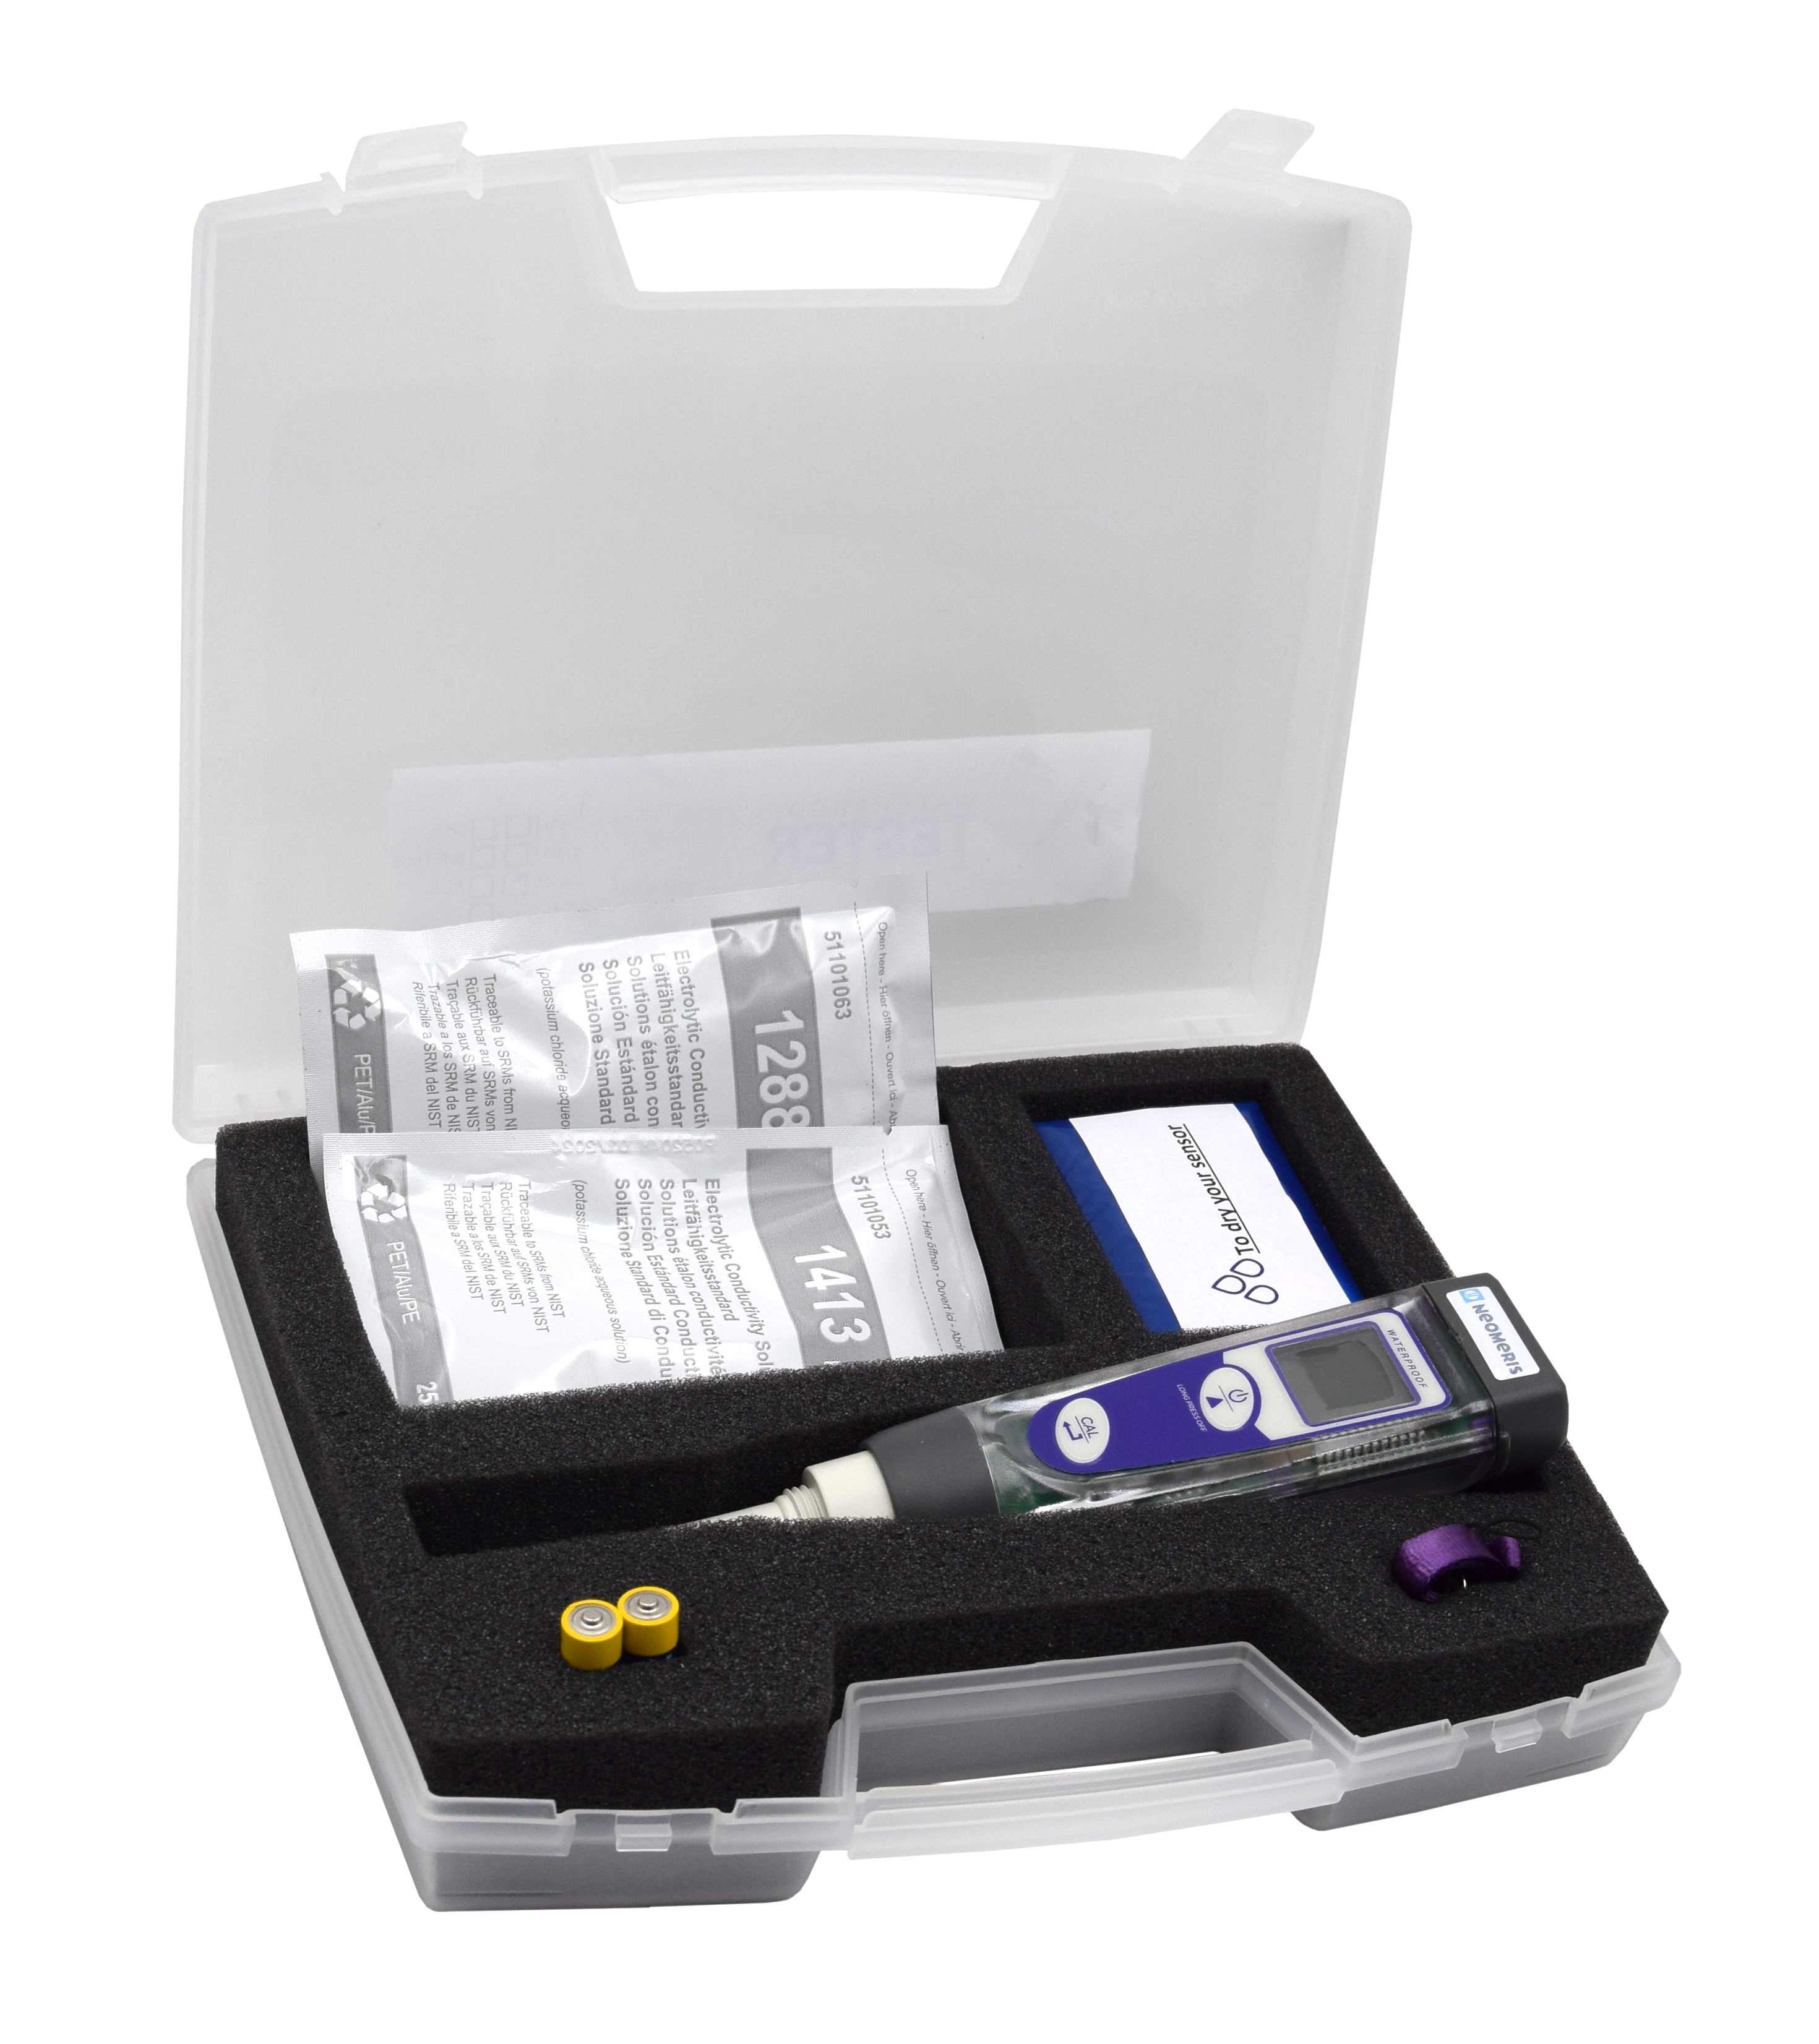 Basic Leitfähigkeit Pocket-Tester im Messkoffer - Handtester zur Bestimmung des Leitwertes